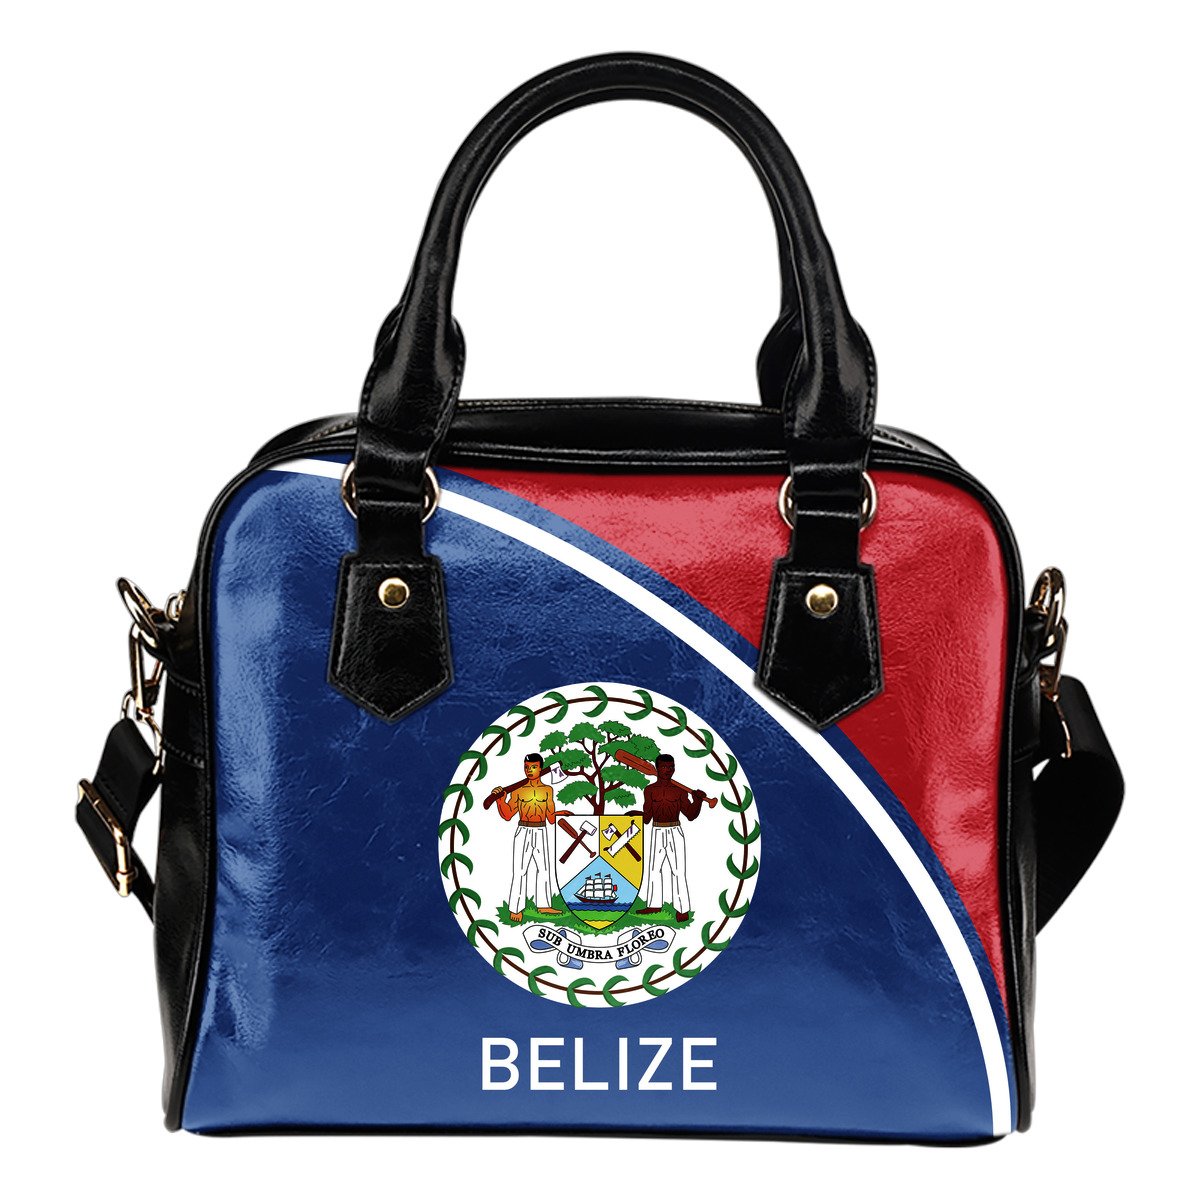 belize-shoulder-handbag-curve-version